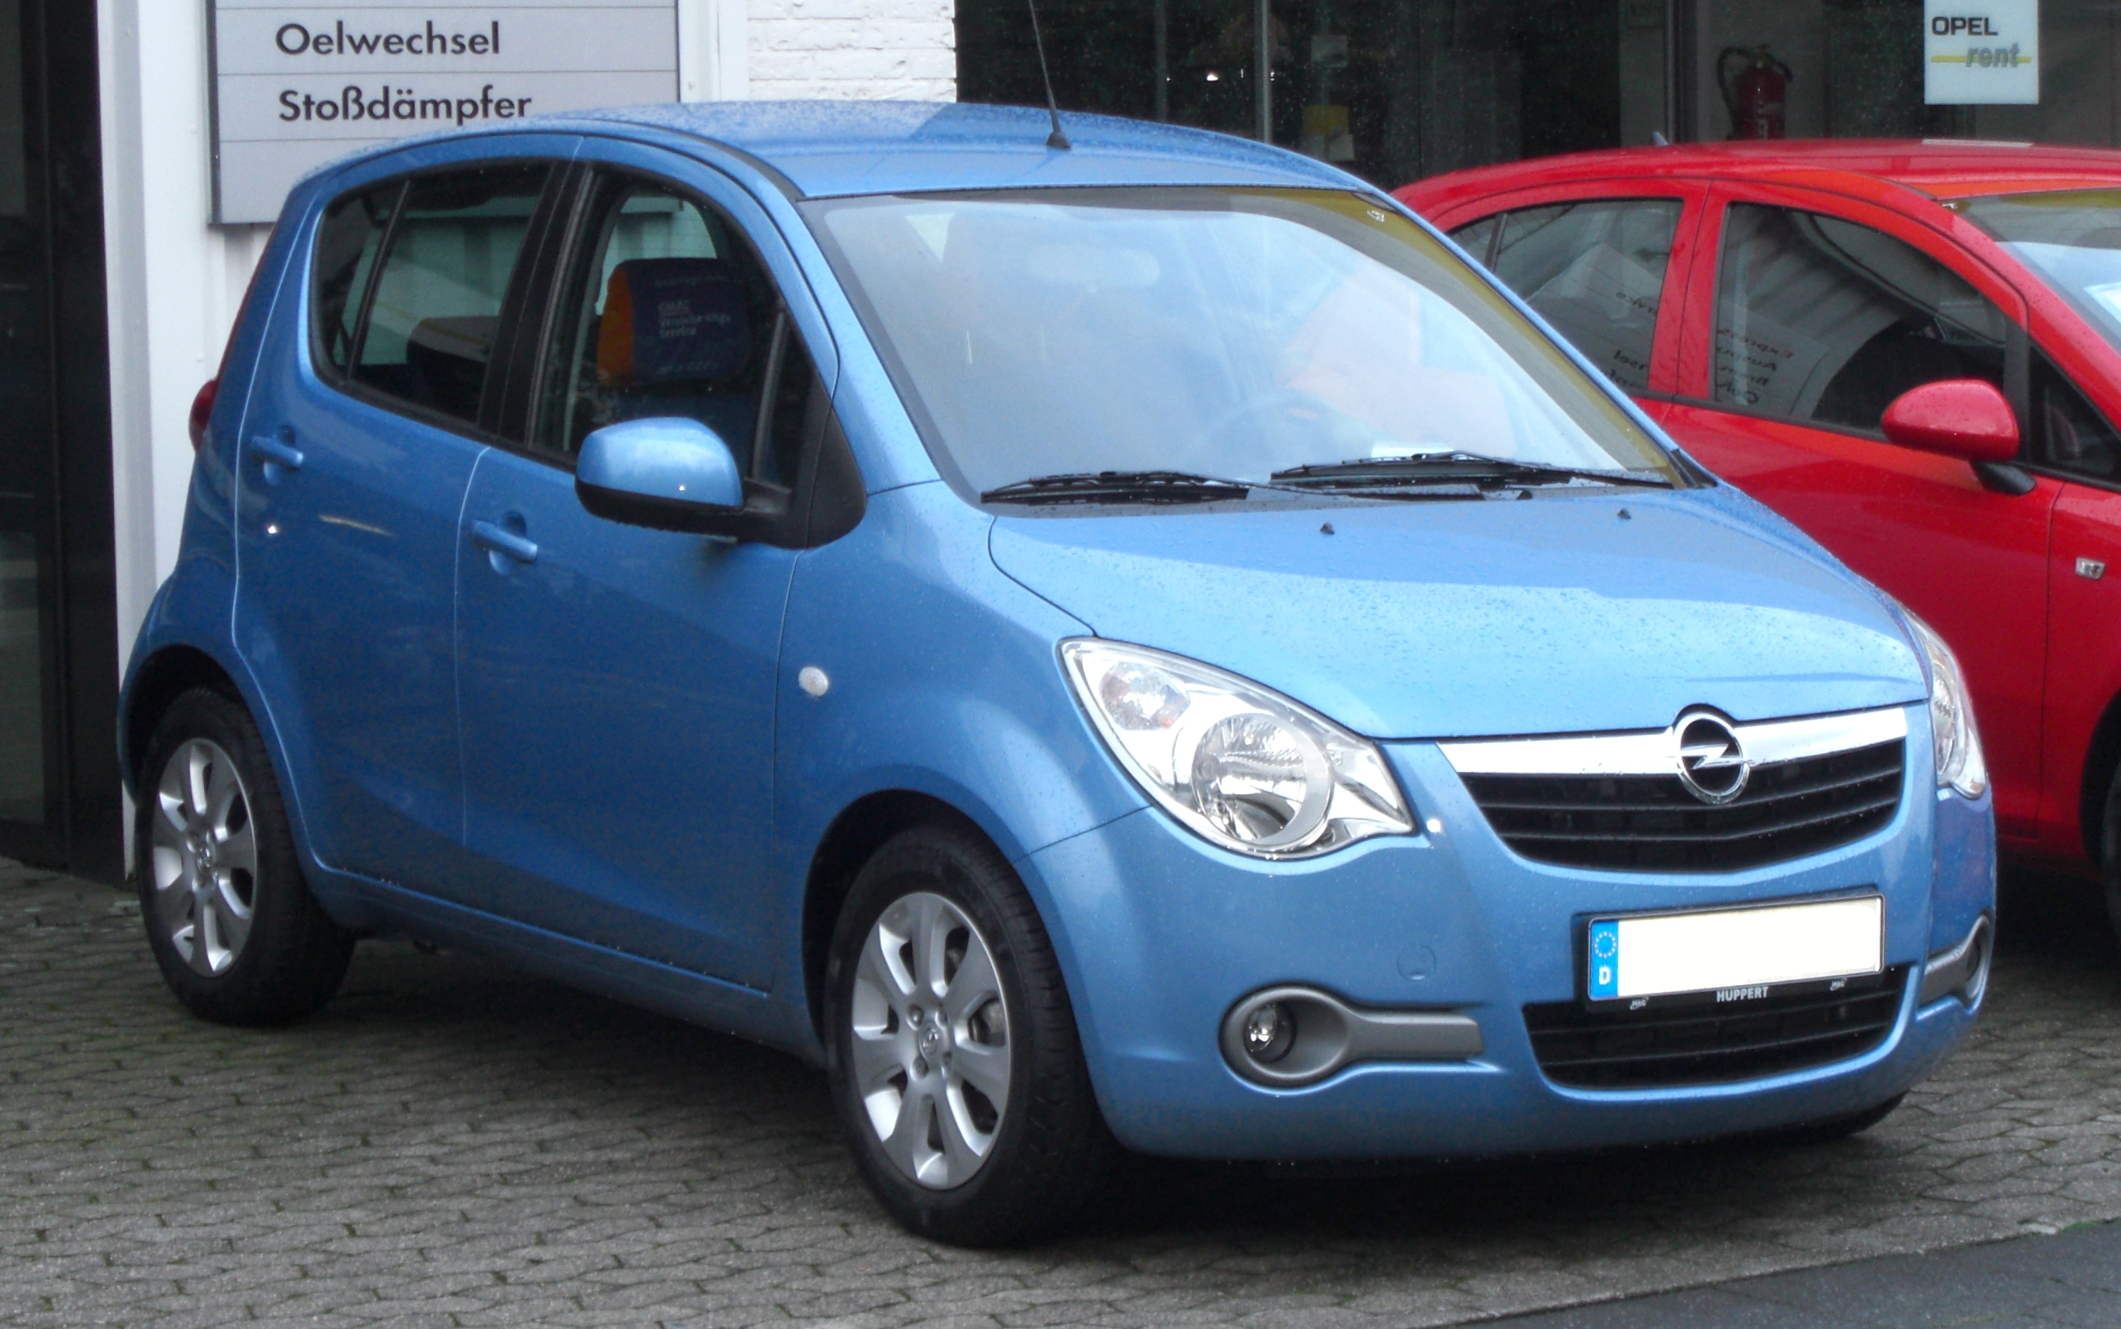 File:Opel Agila B front-3.jpg